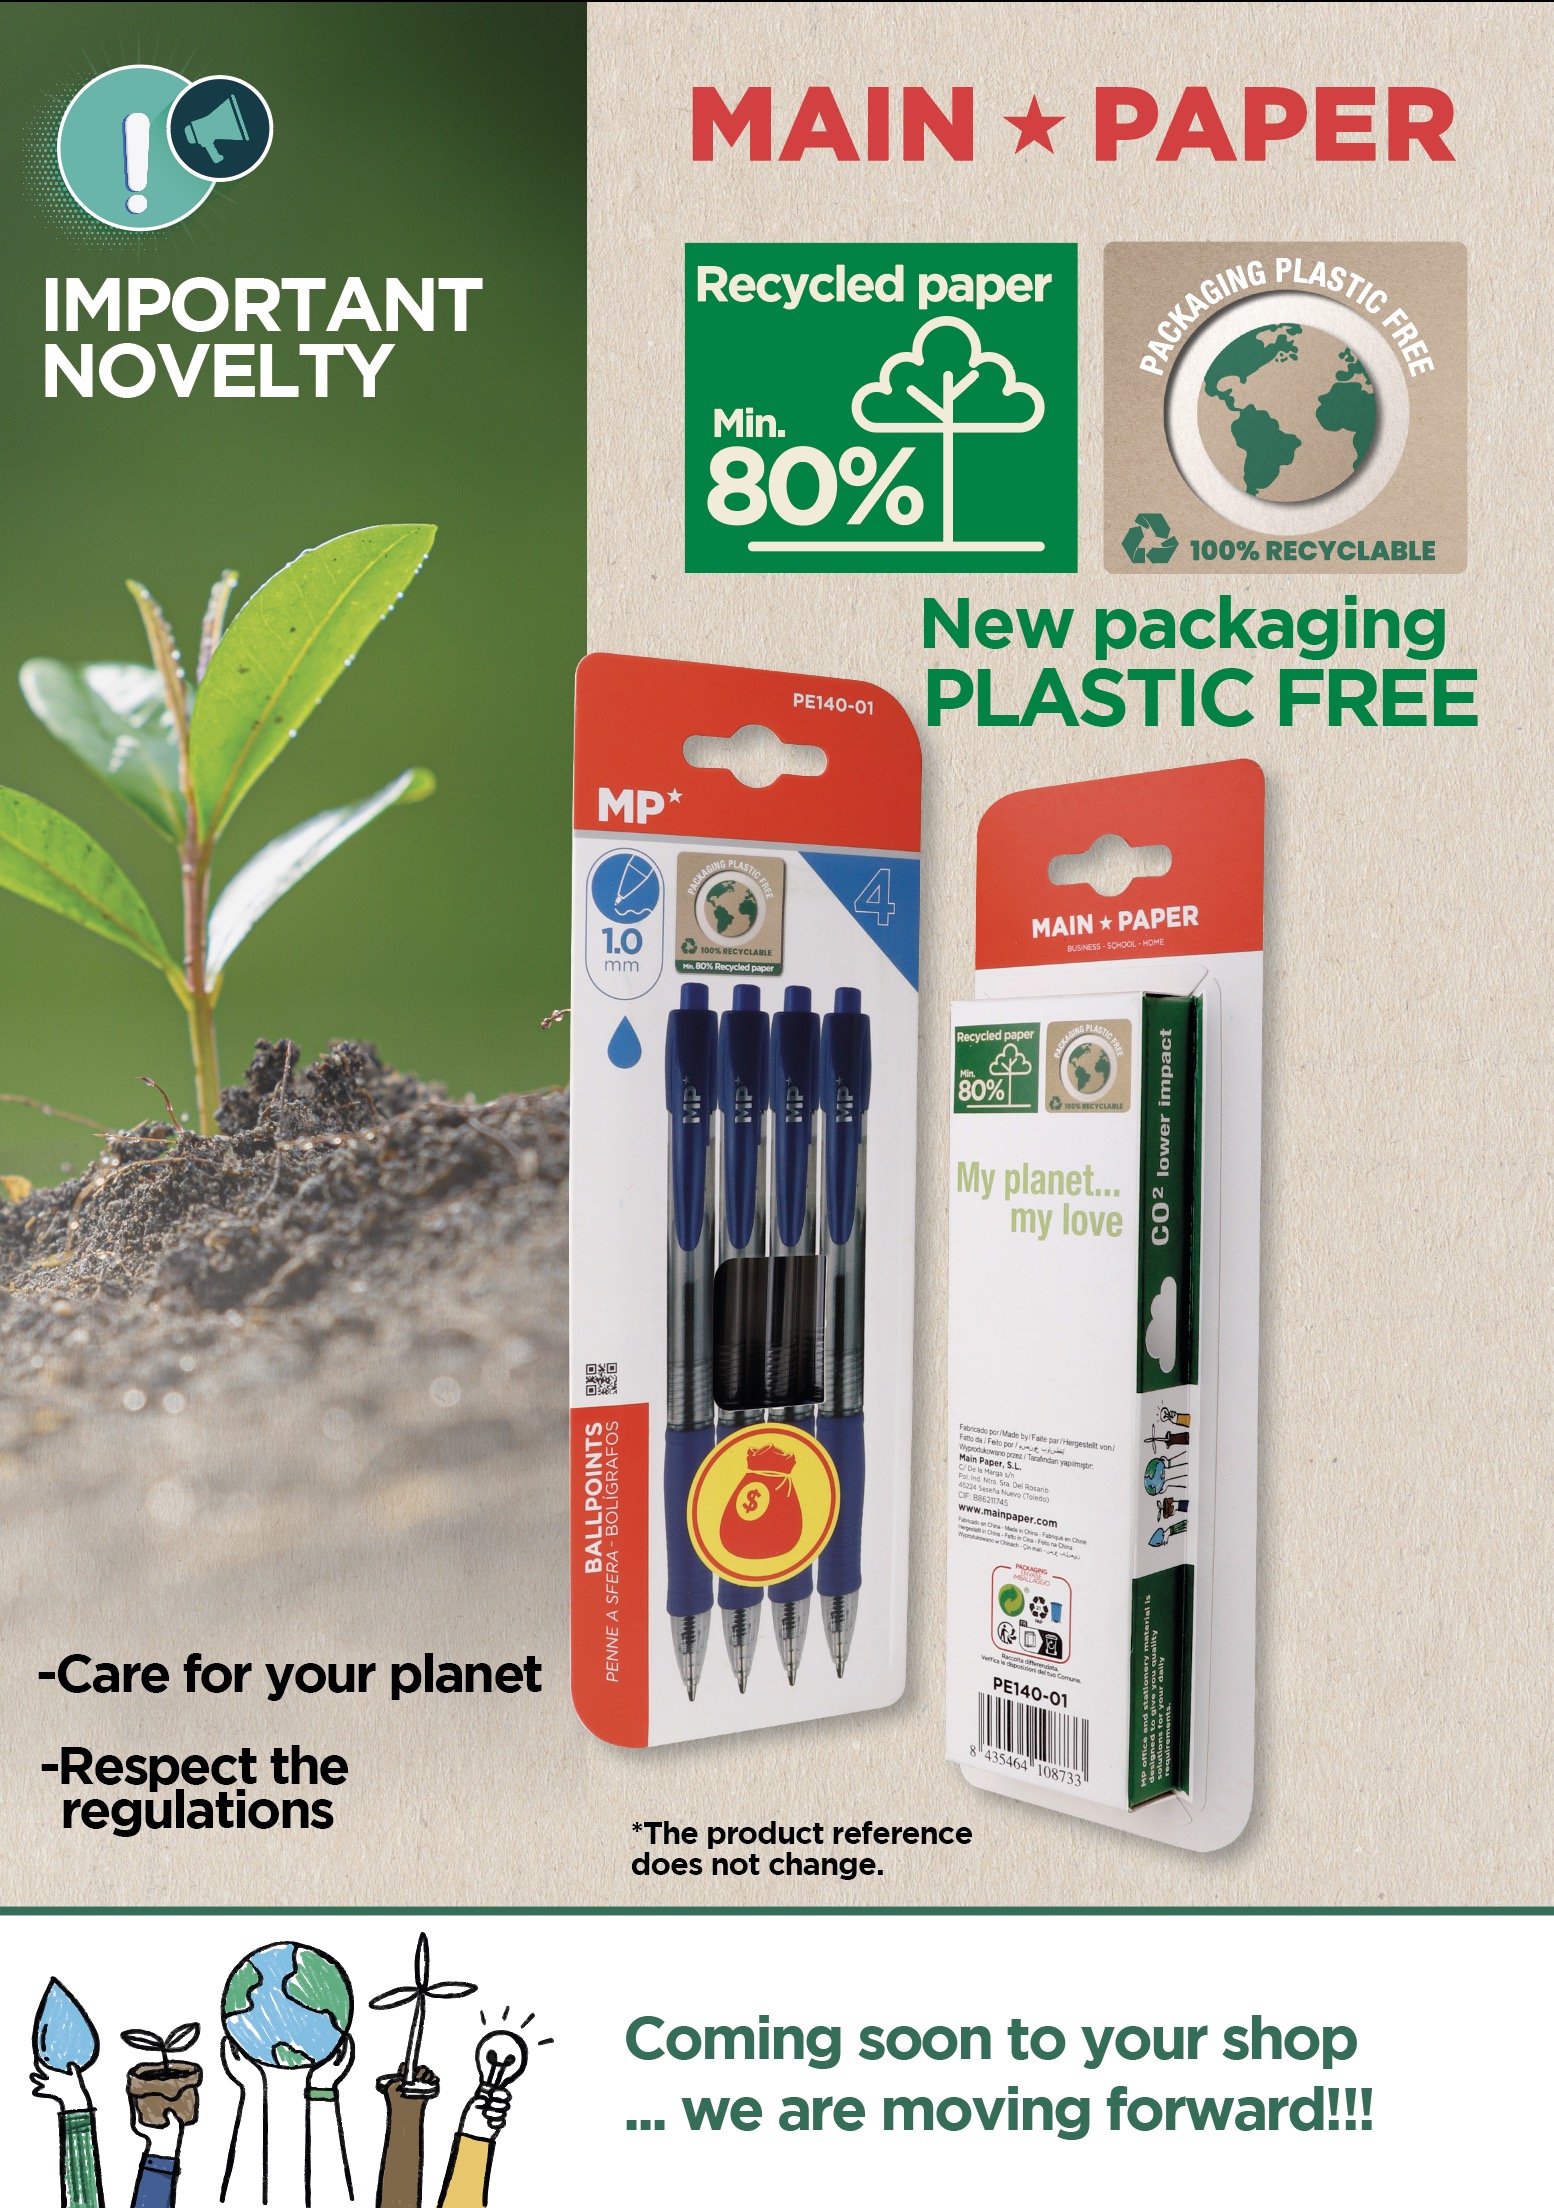 Substituição de embalagens ecologicamente corretas, adesão ao desenvolvimento sustentável